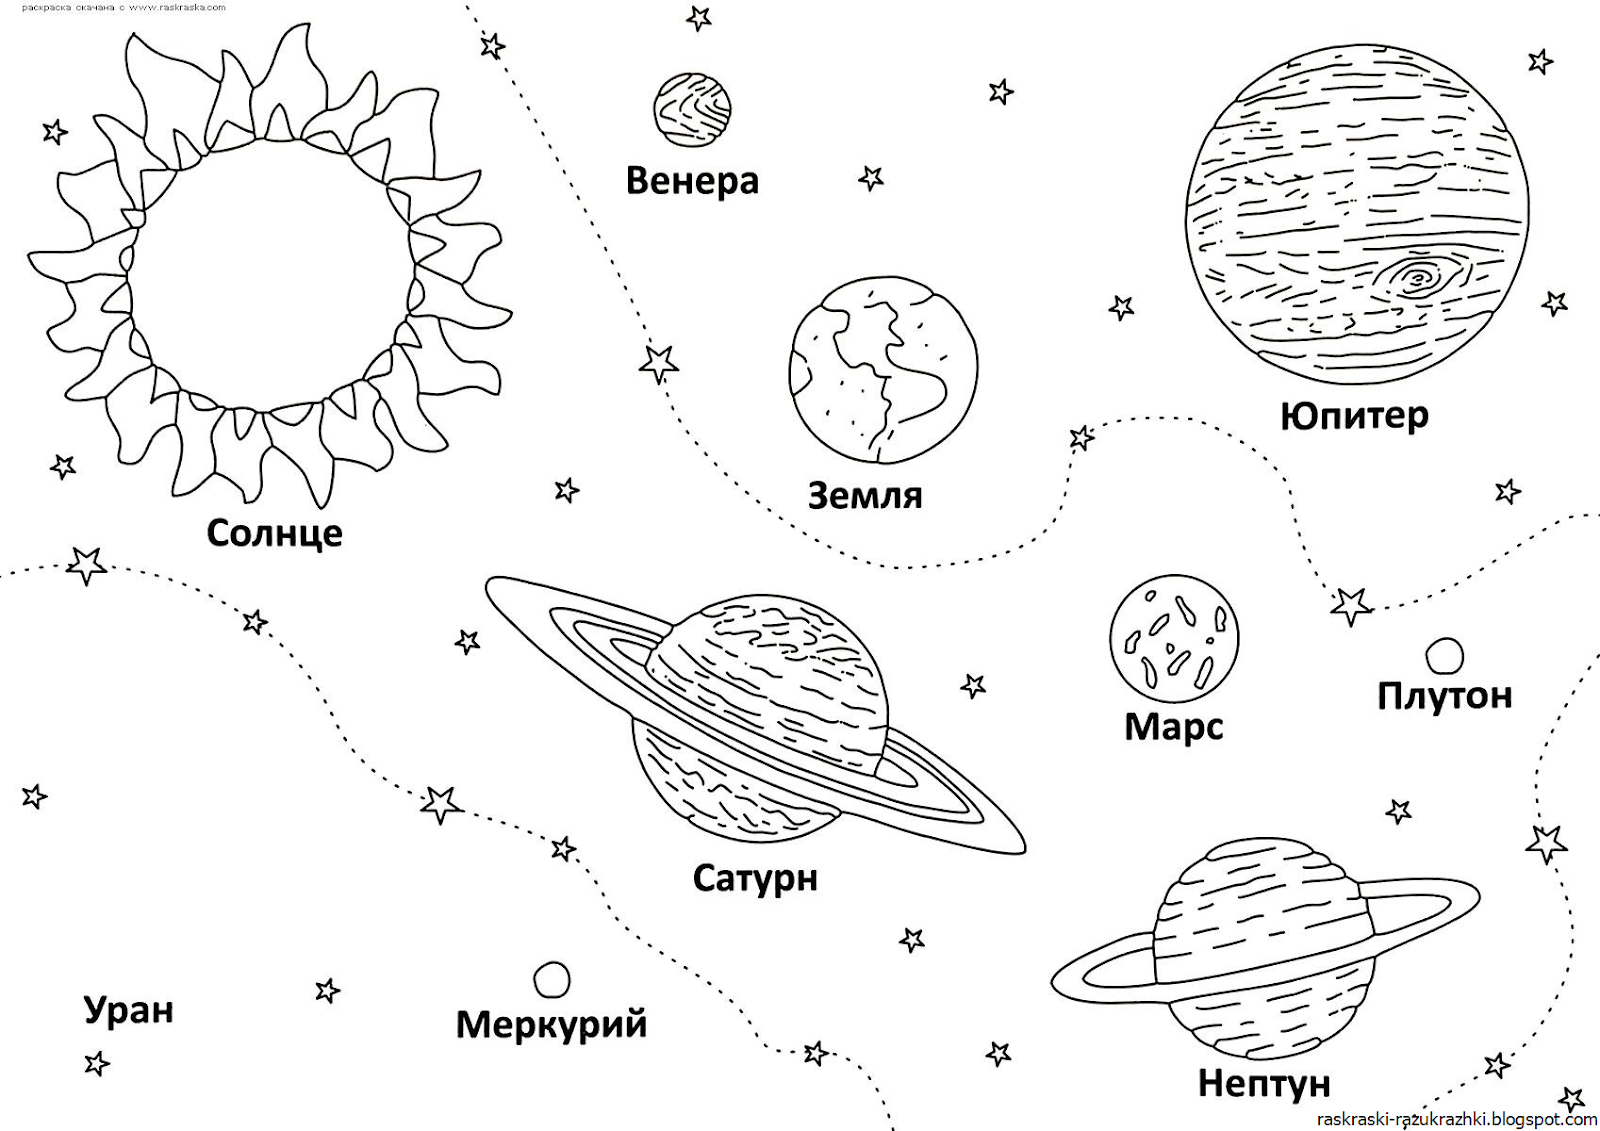 Планеты солнечной системы для детей: астрономия для дошкольников по порядку и без лишних сложностей